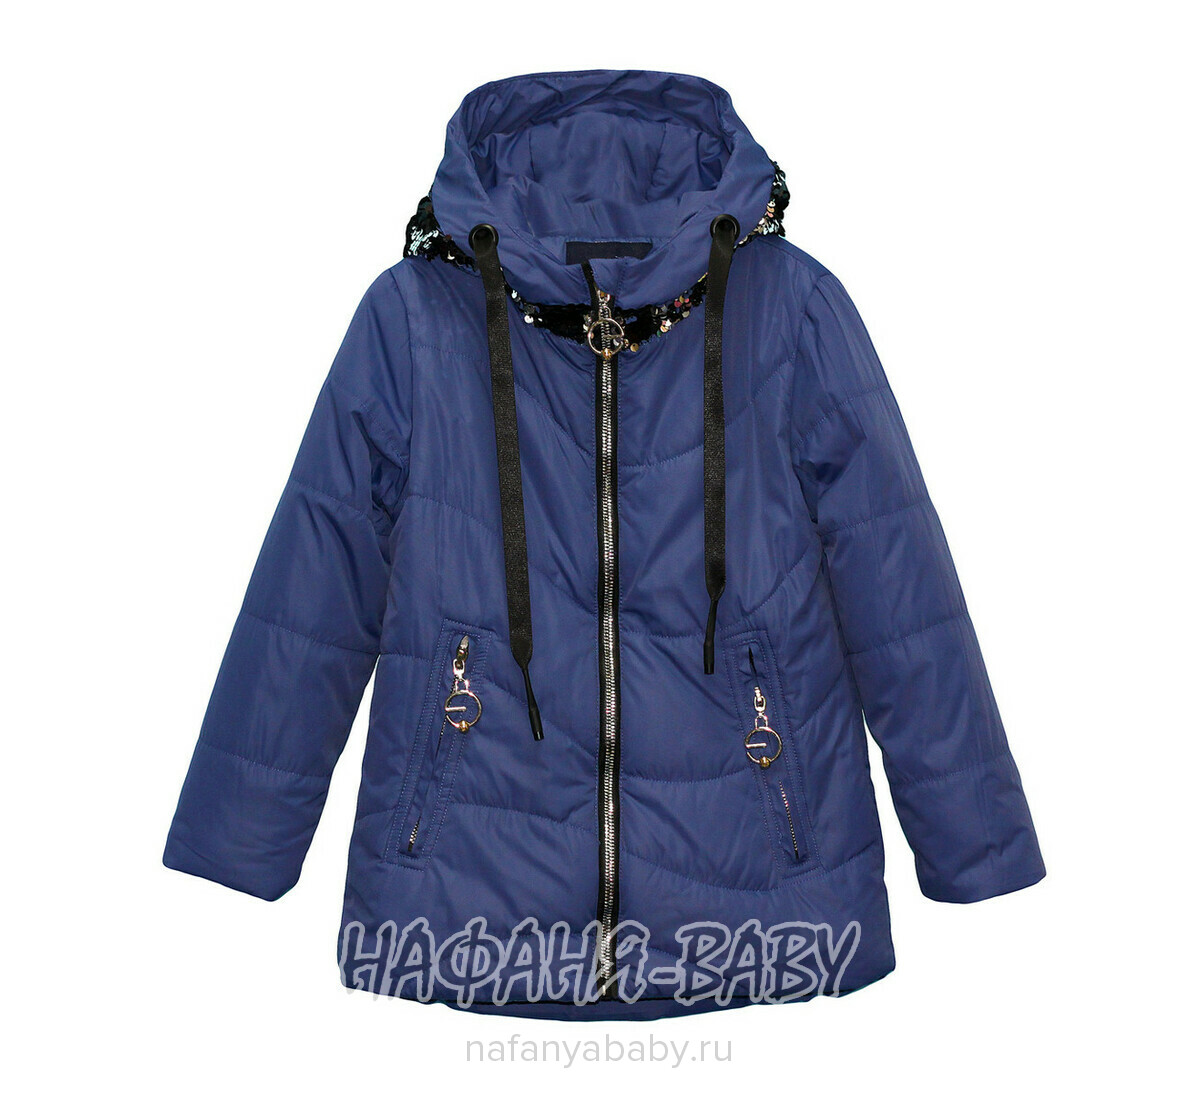 Детская демисезонная куртка с перевертышами DELFIN-FREE арт: 1980, 5-9 лет, оптом Китай (Пекин)